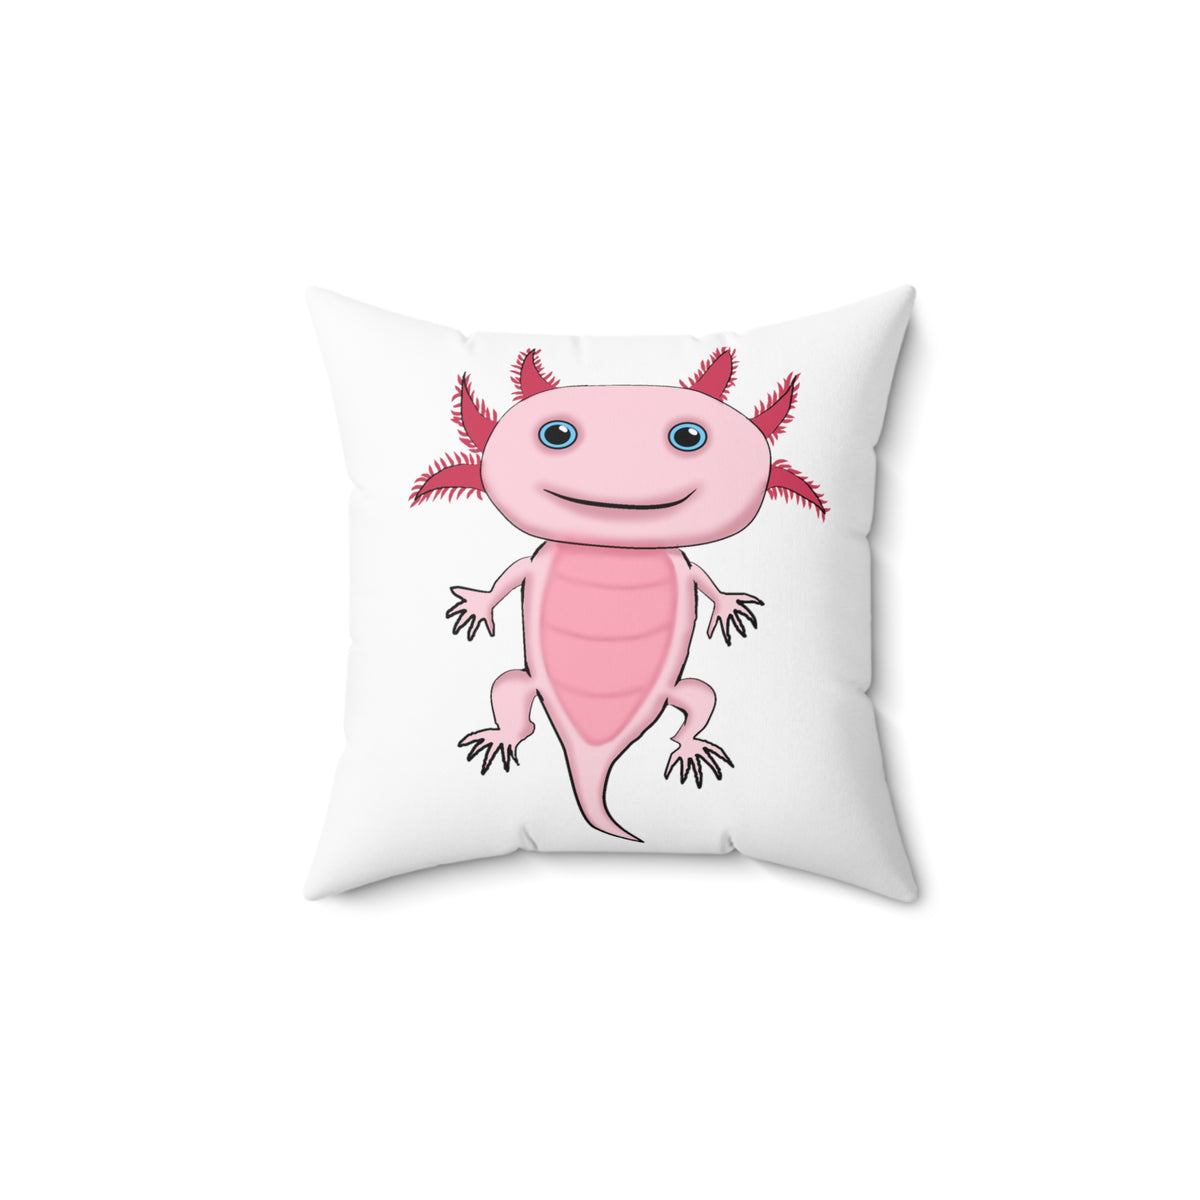 Adorable Pink Axolotl Spun Polyester Square Pillow